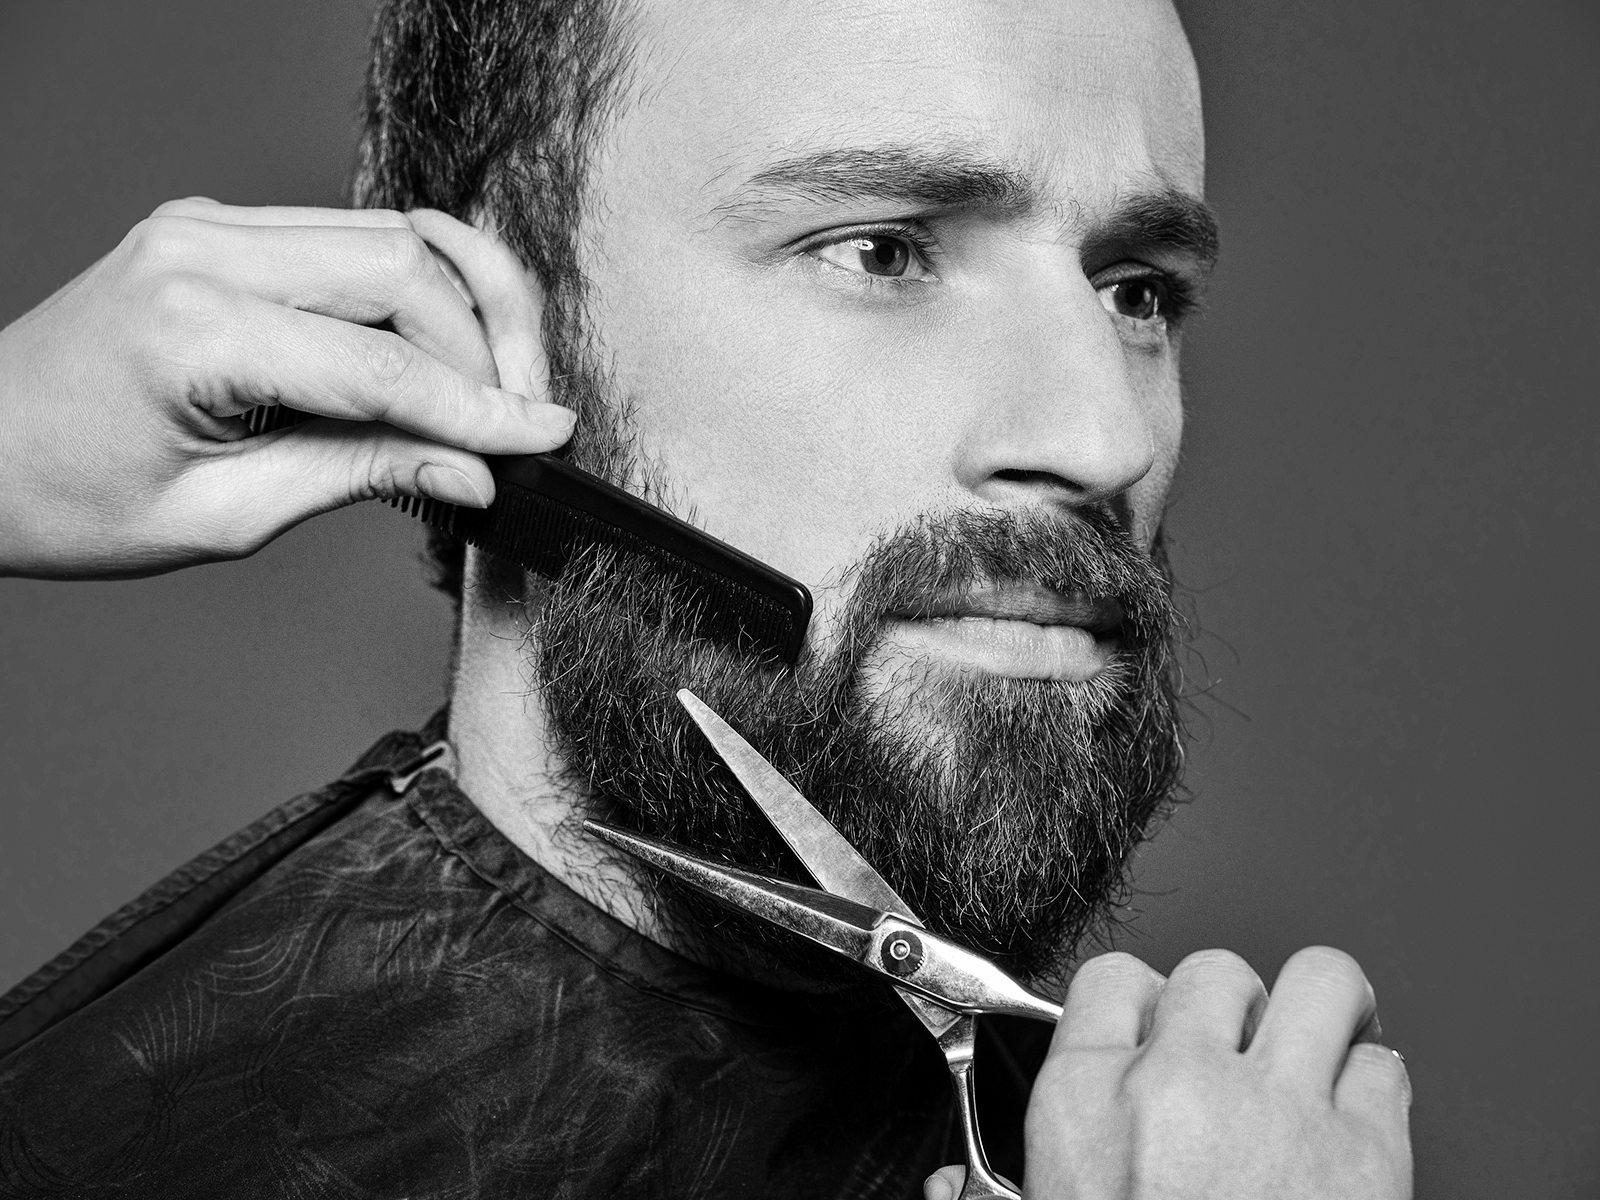 Борода украшает. Мужские барбер стрижки бороды и усов. Барбер моделирование бороды. Кантовка барбер. Мужские стрижки с бородой.